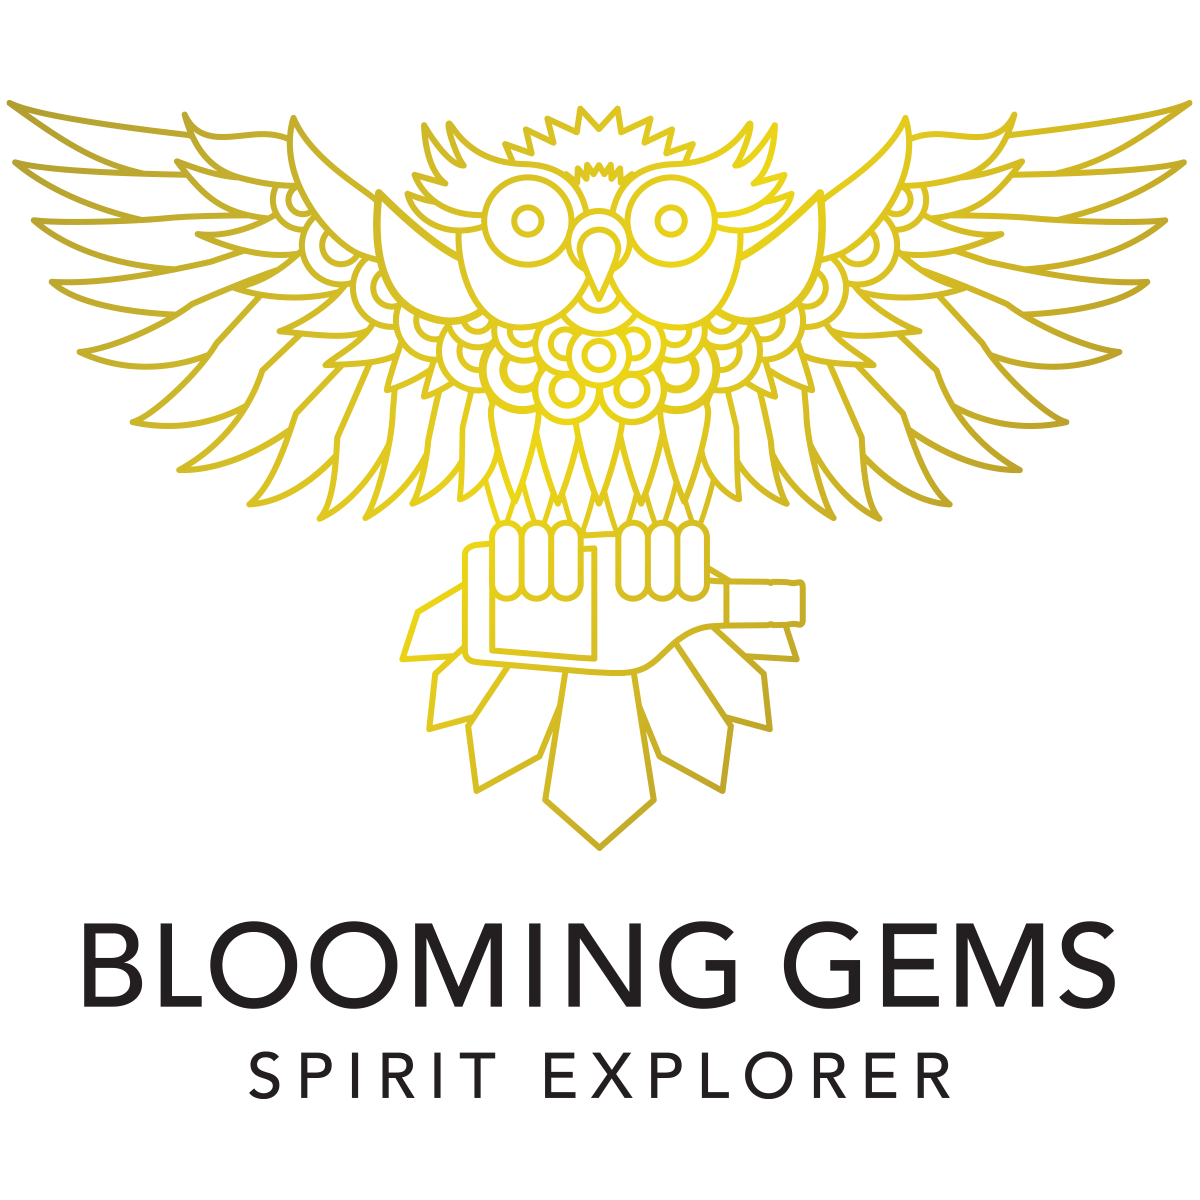 Blooming Gems - Spirit Explorer